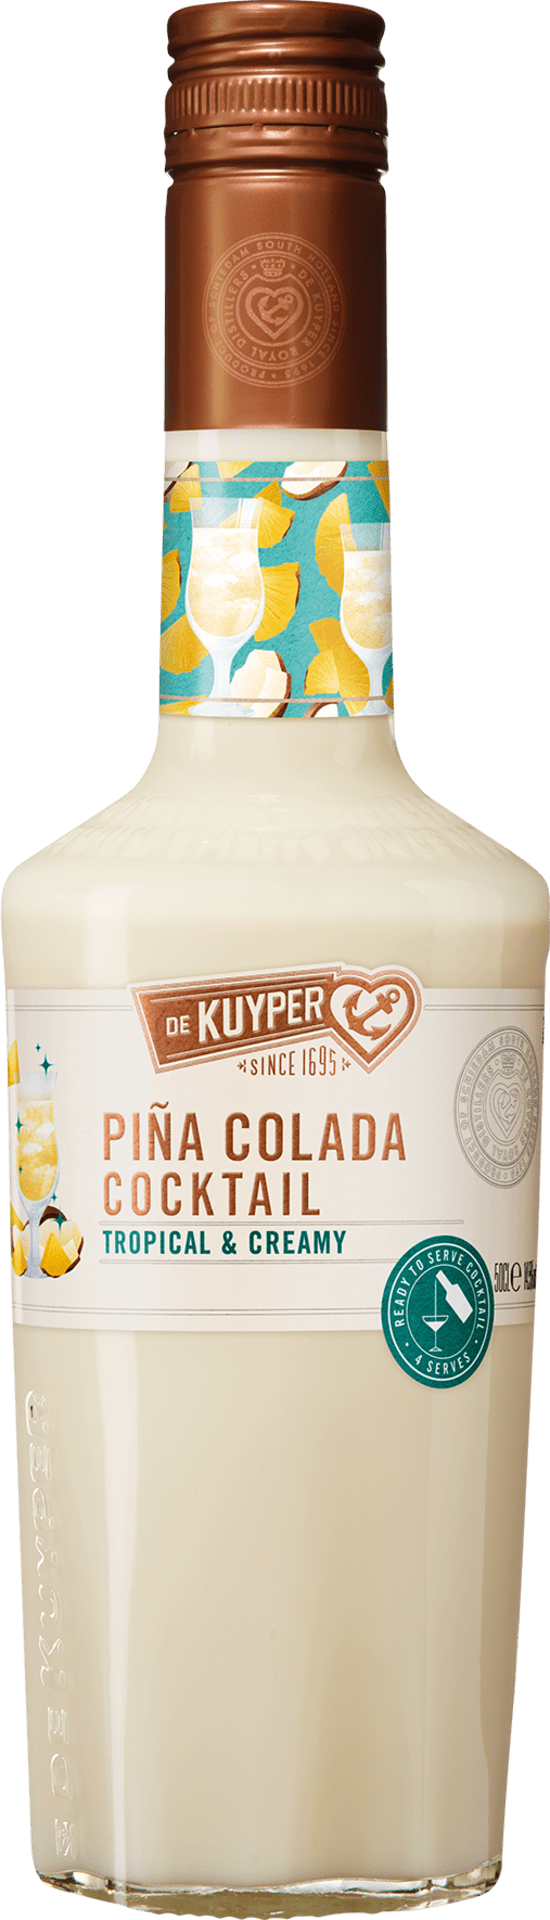 Piña Colada Cocktail - Ready to Serve